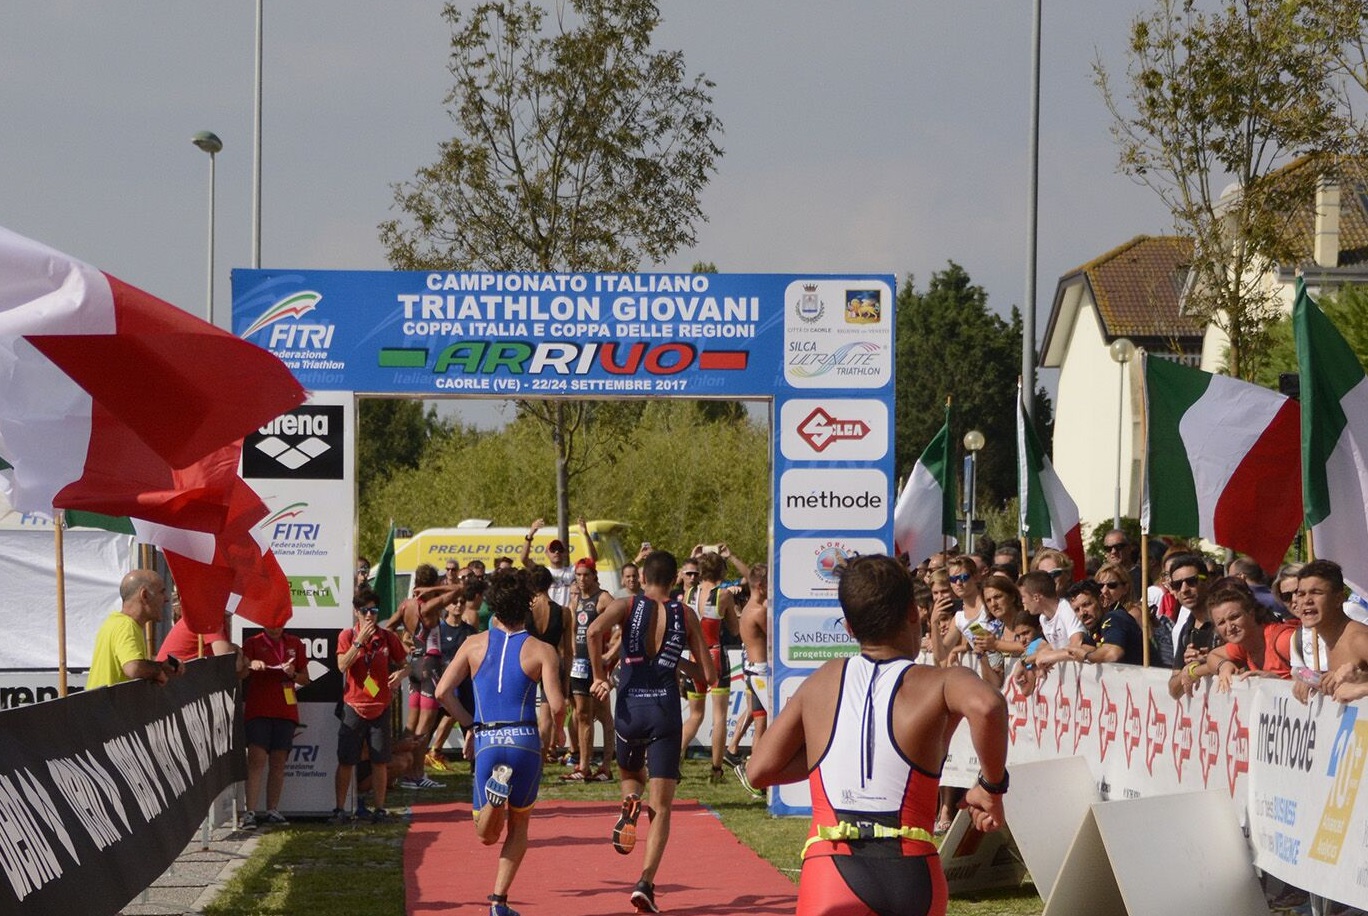 Campionati Italiani Giovanili di Triathlon: accesso per qualificazione dalle prove interregionali